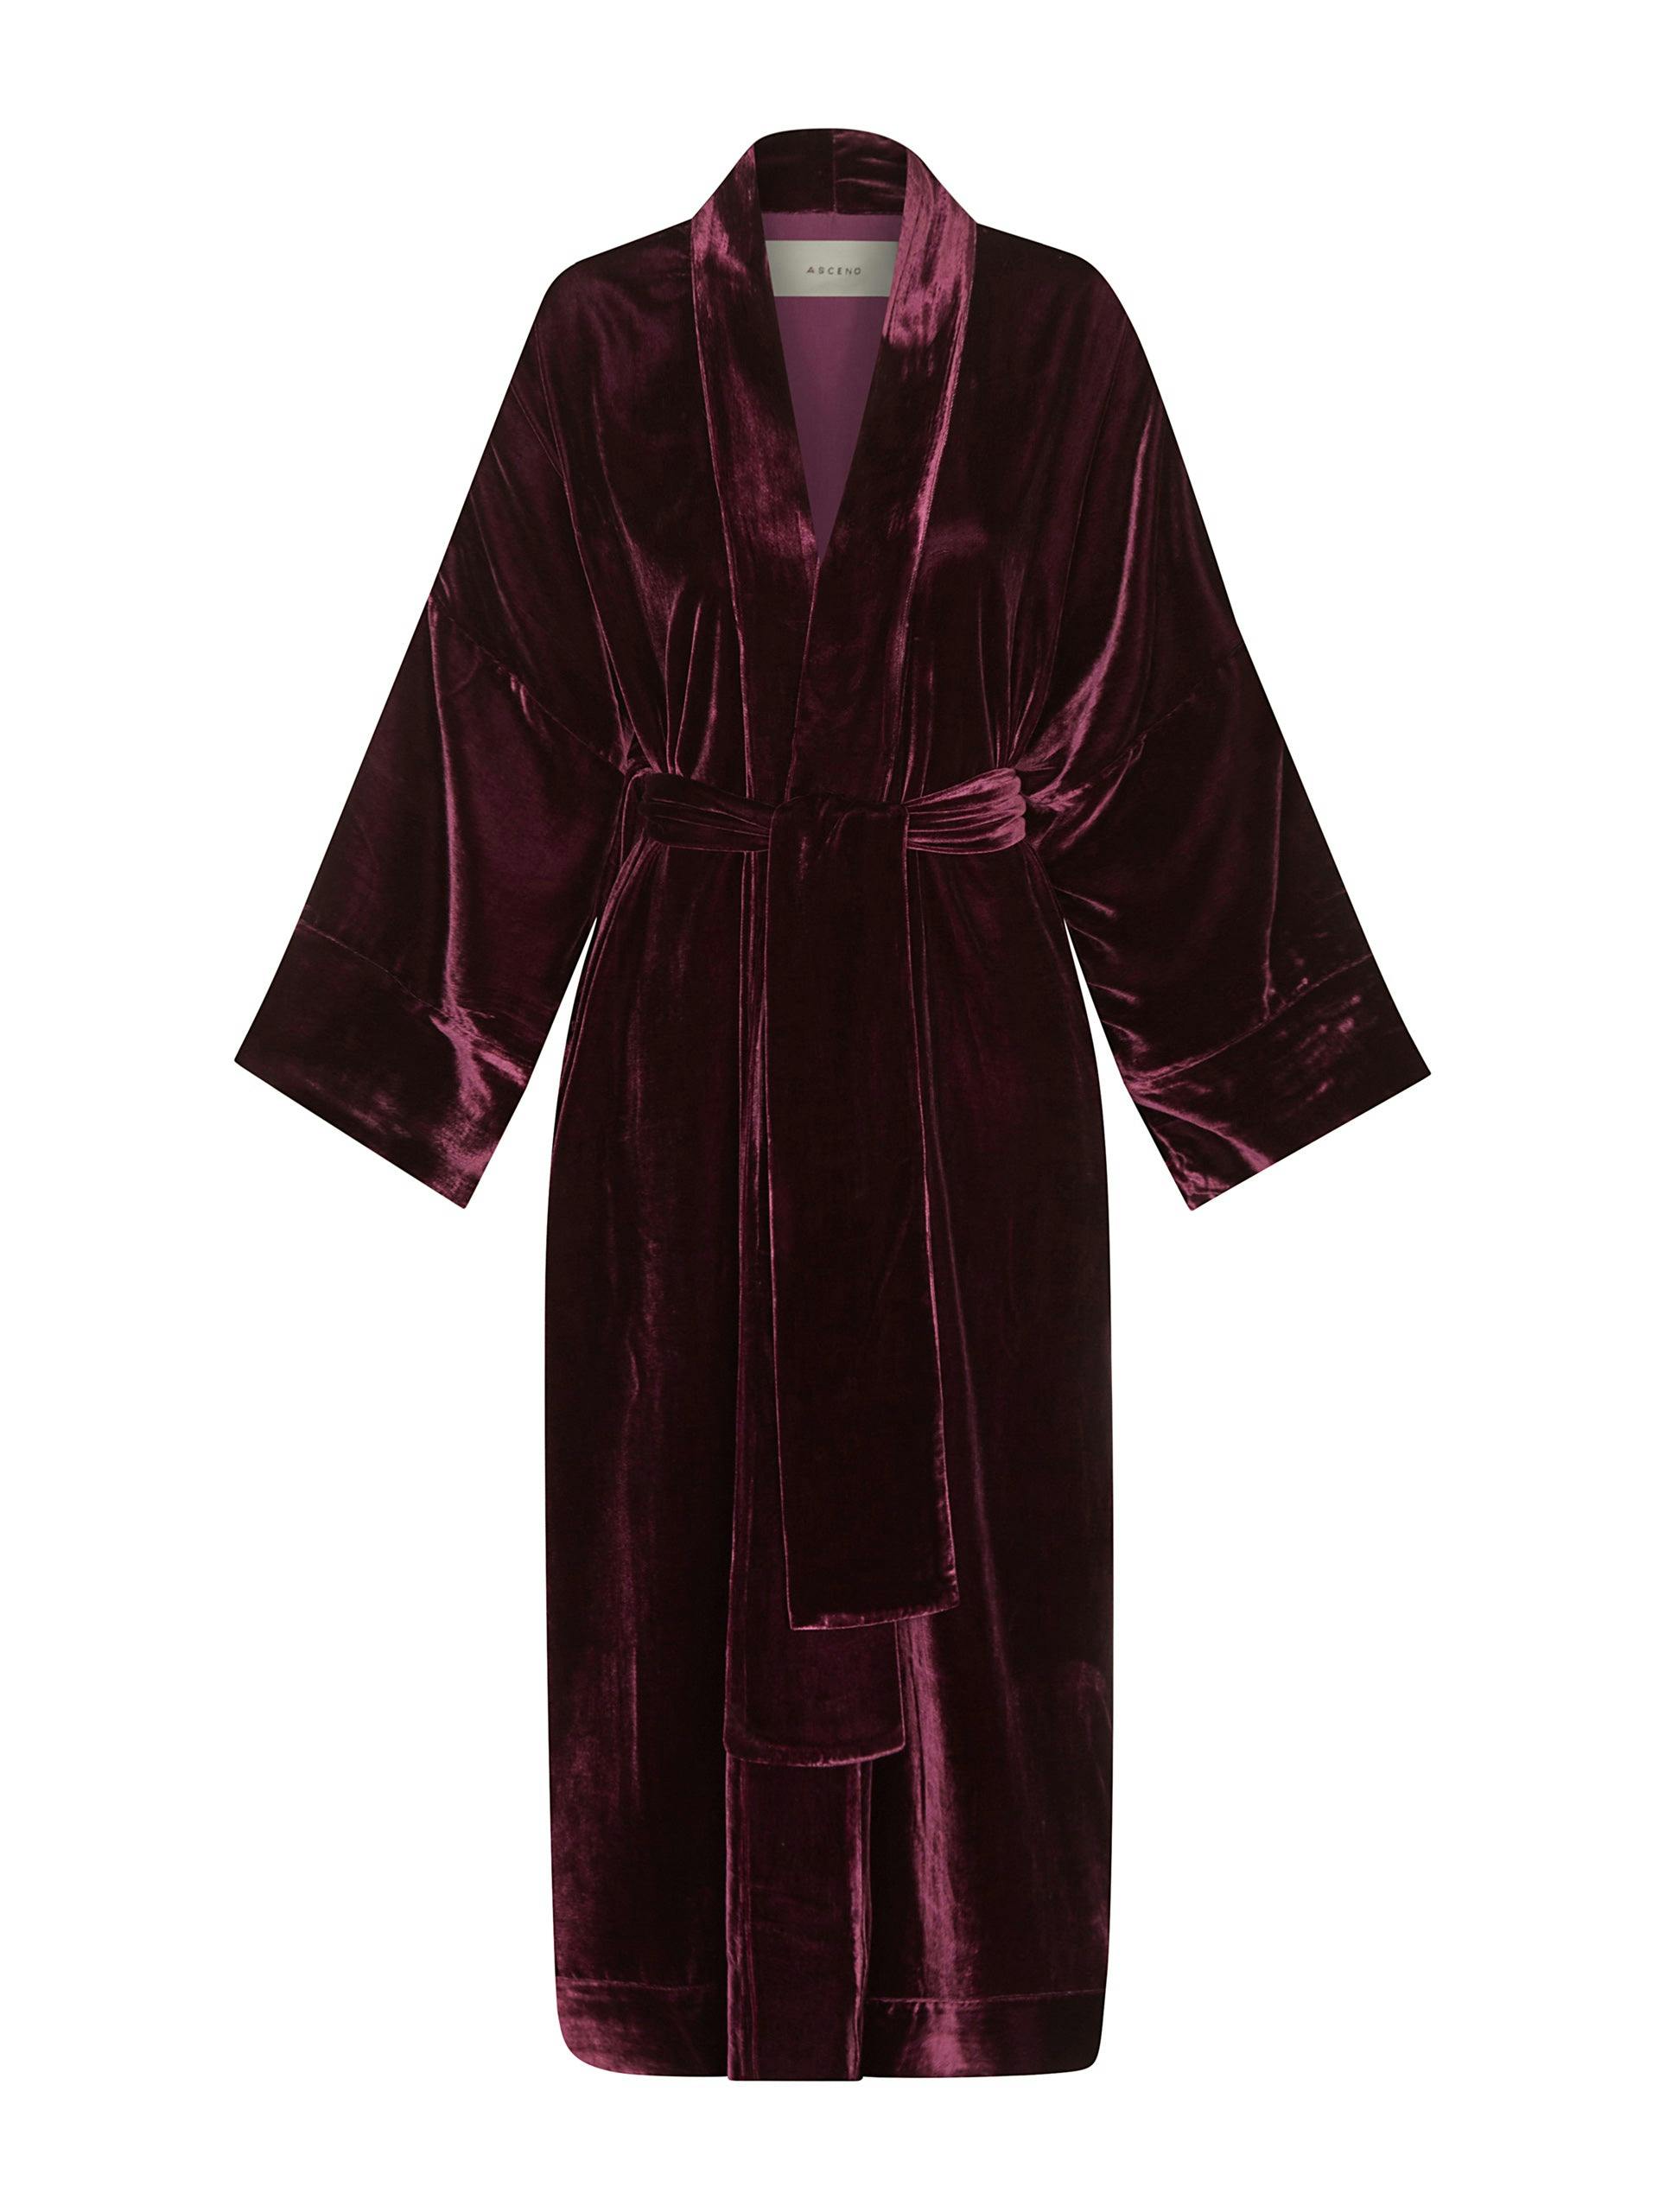 Burgundy velvet robe